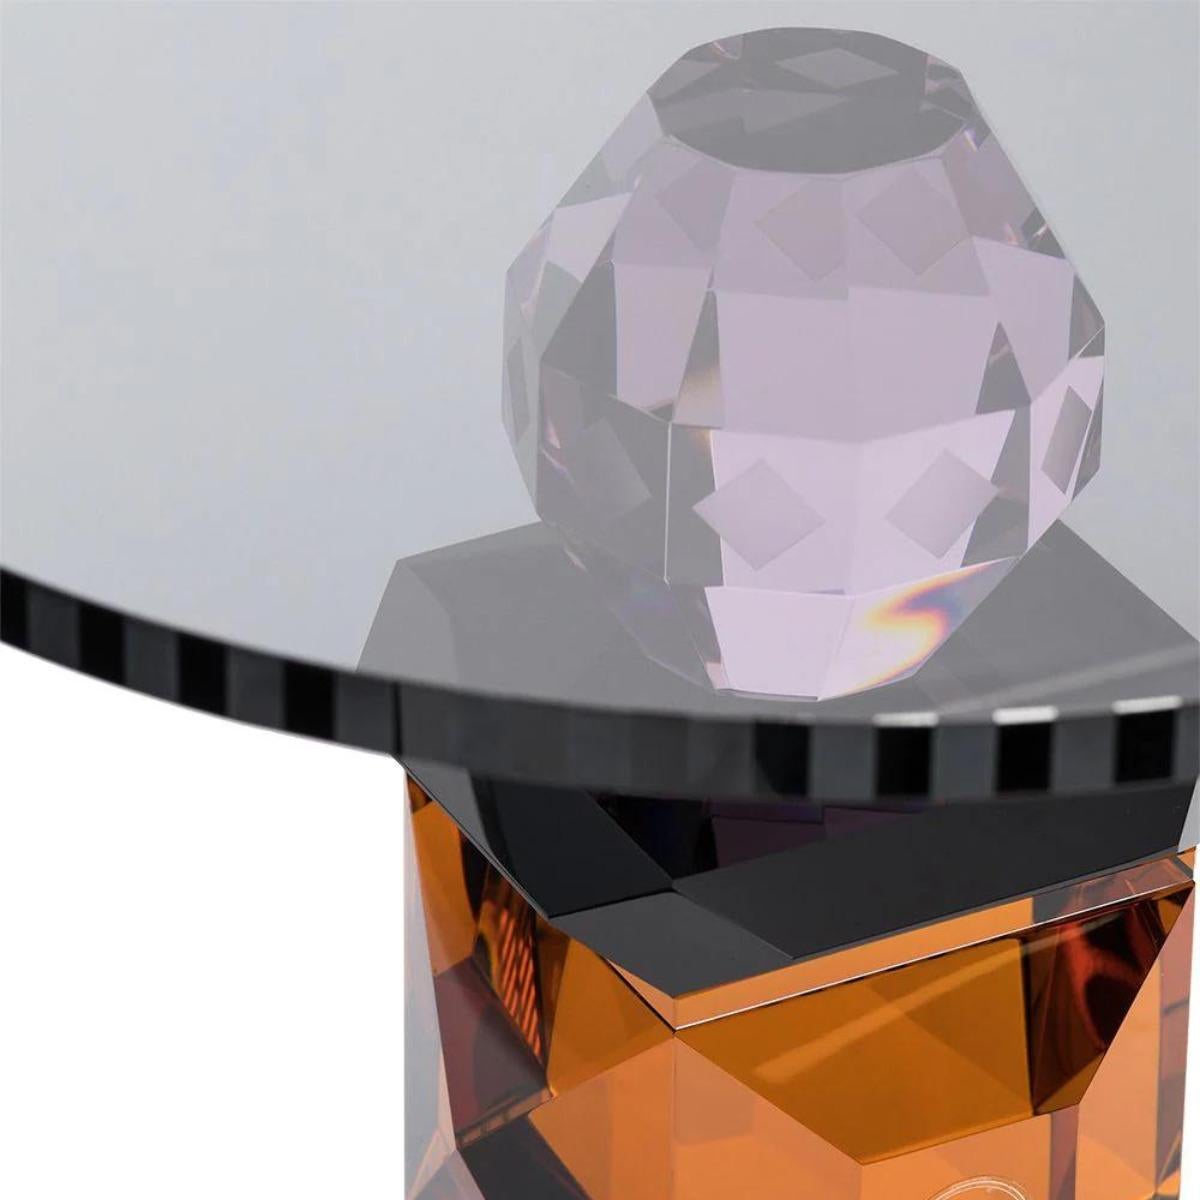 Rundes Kristalltablett, Modell SAV, 21. Jahrhundert.

Rundes Tablett aus farbigem Kristall. Die durchdachte Auswahl von MATERIALEN, Farben und Formen in einem Tablett kann mit dem vorhandenen Dekor harmonieren oder ein frisches und fesselndes